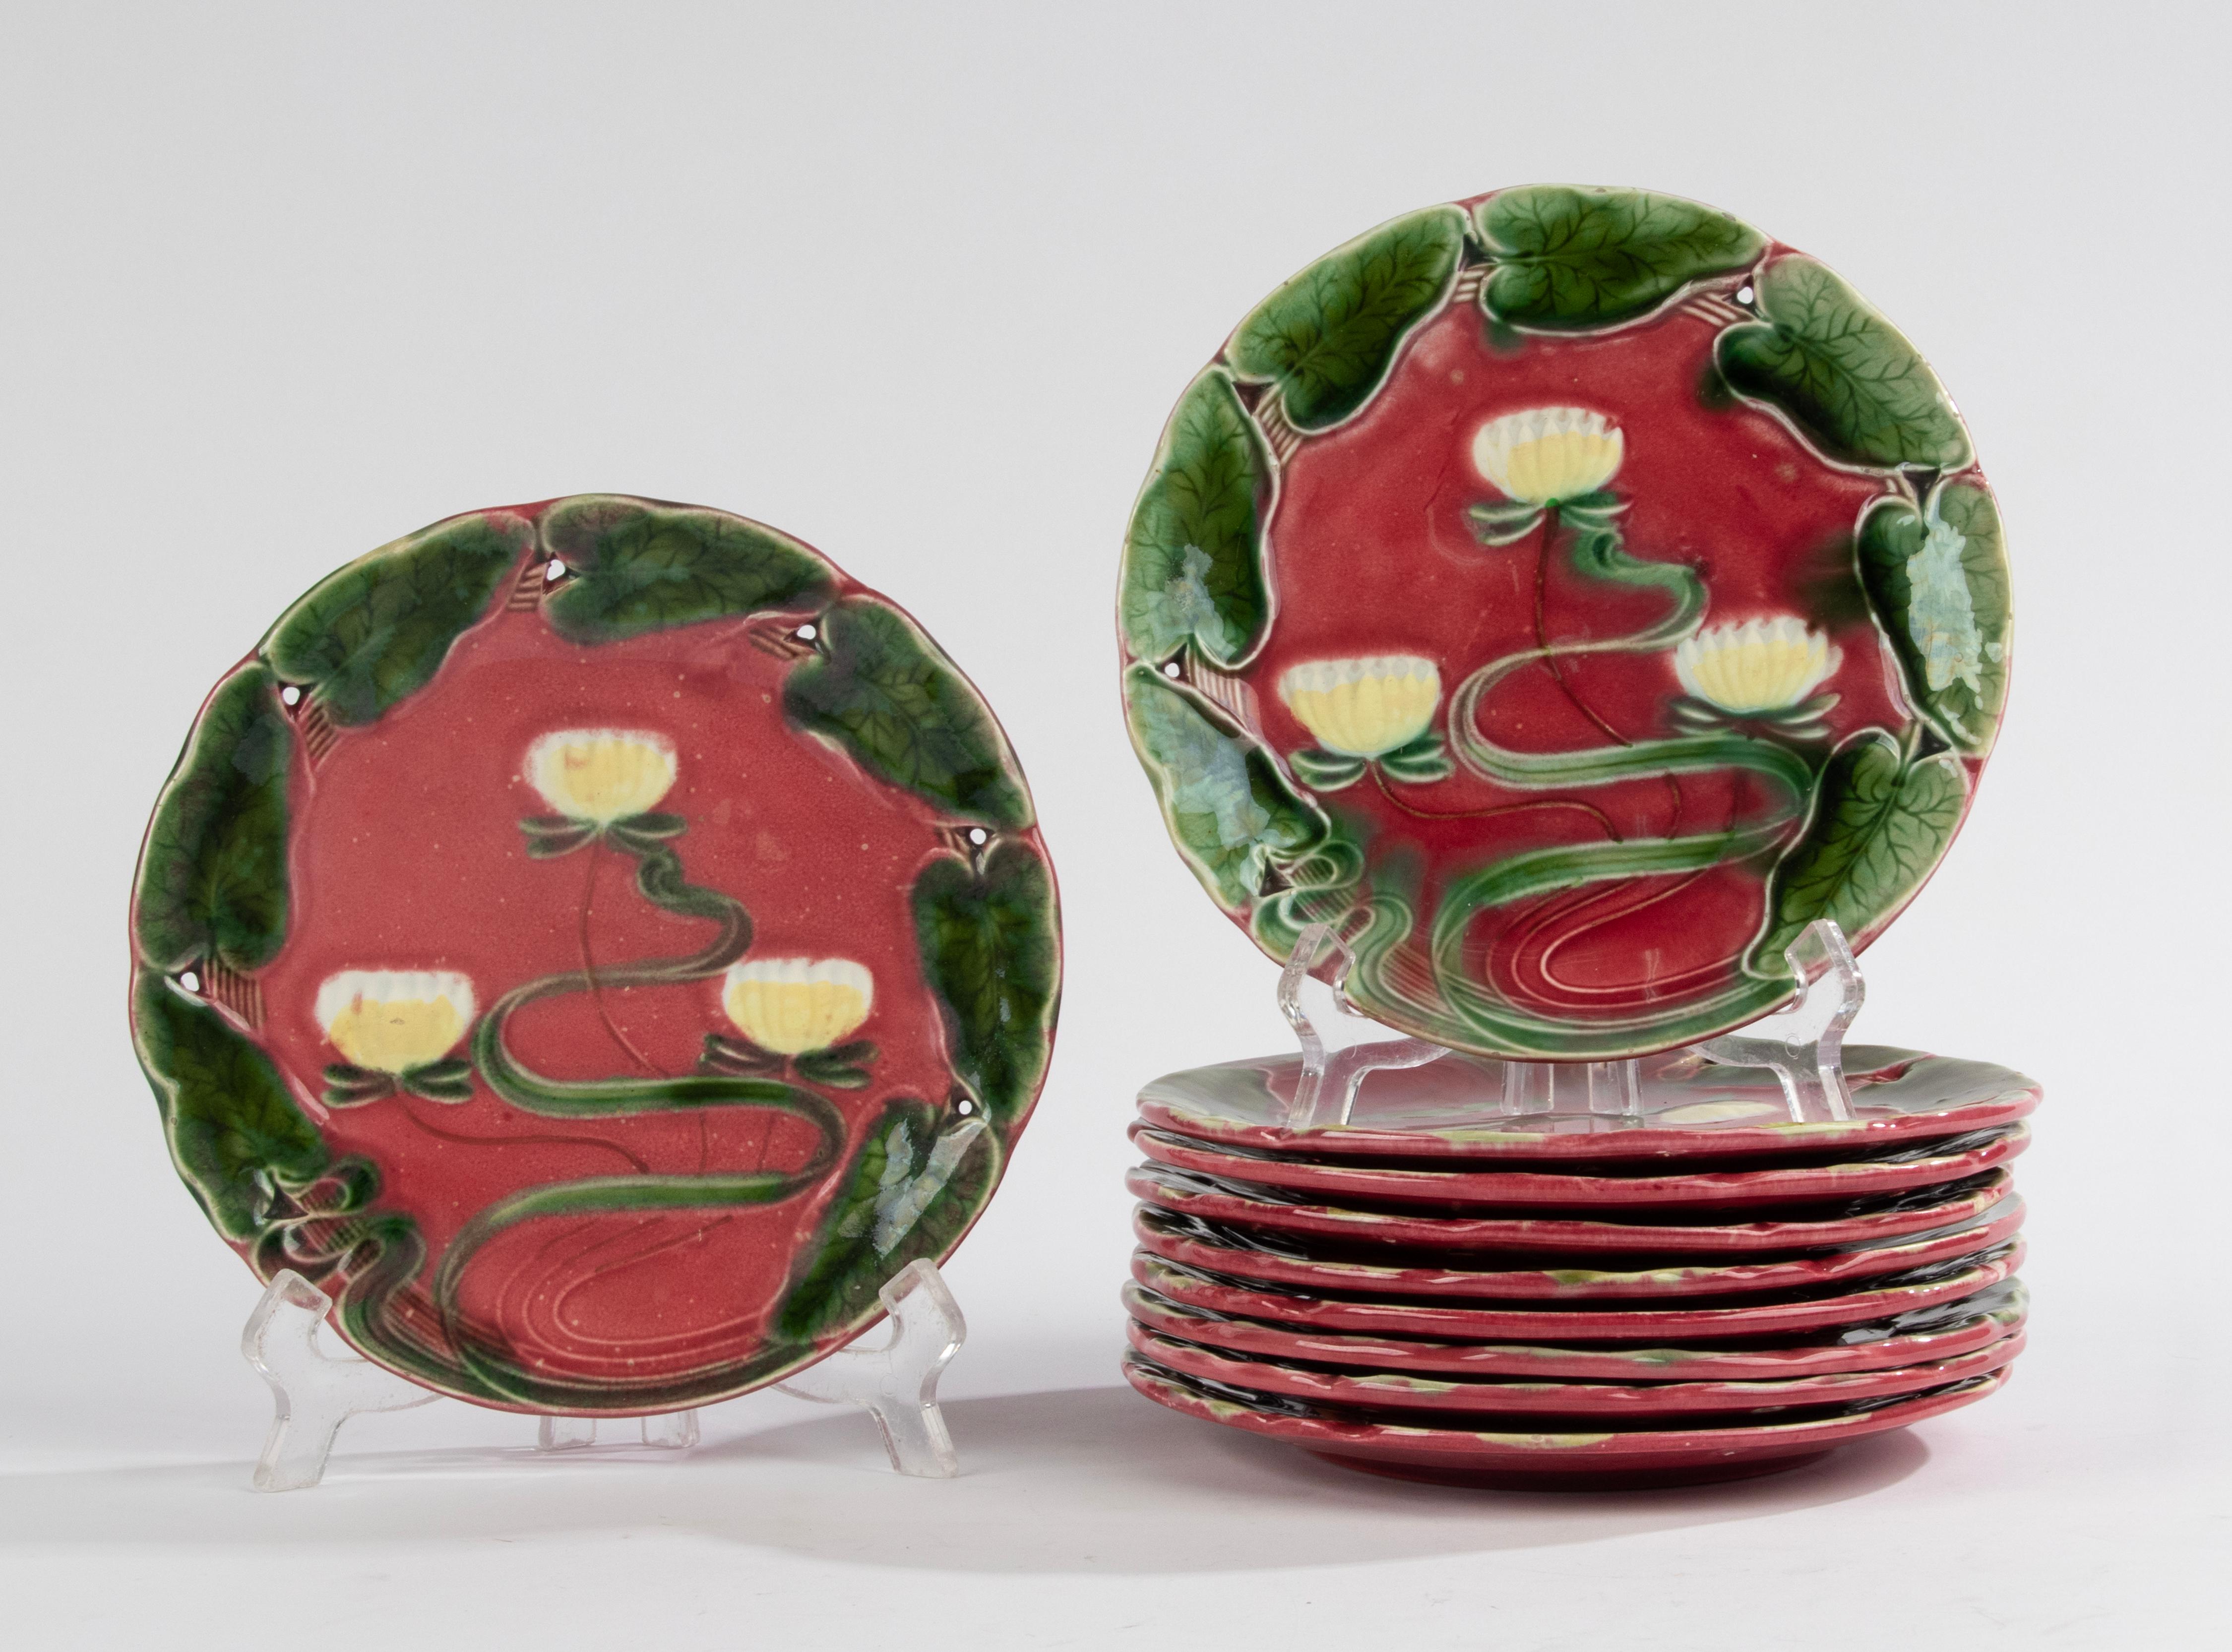 Un bel ensemble de 10 assiettes en majolique Art Nouveau, fabriquées par Villeroy & Boch. Motif coloré avec des nénuphars. 
Les plaques datent d'environ 1900. 
Ils sont en bon état, sans ébréchures ni lignes de démarcation. 
Magnifique couleur et